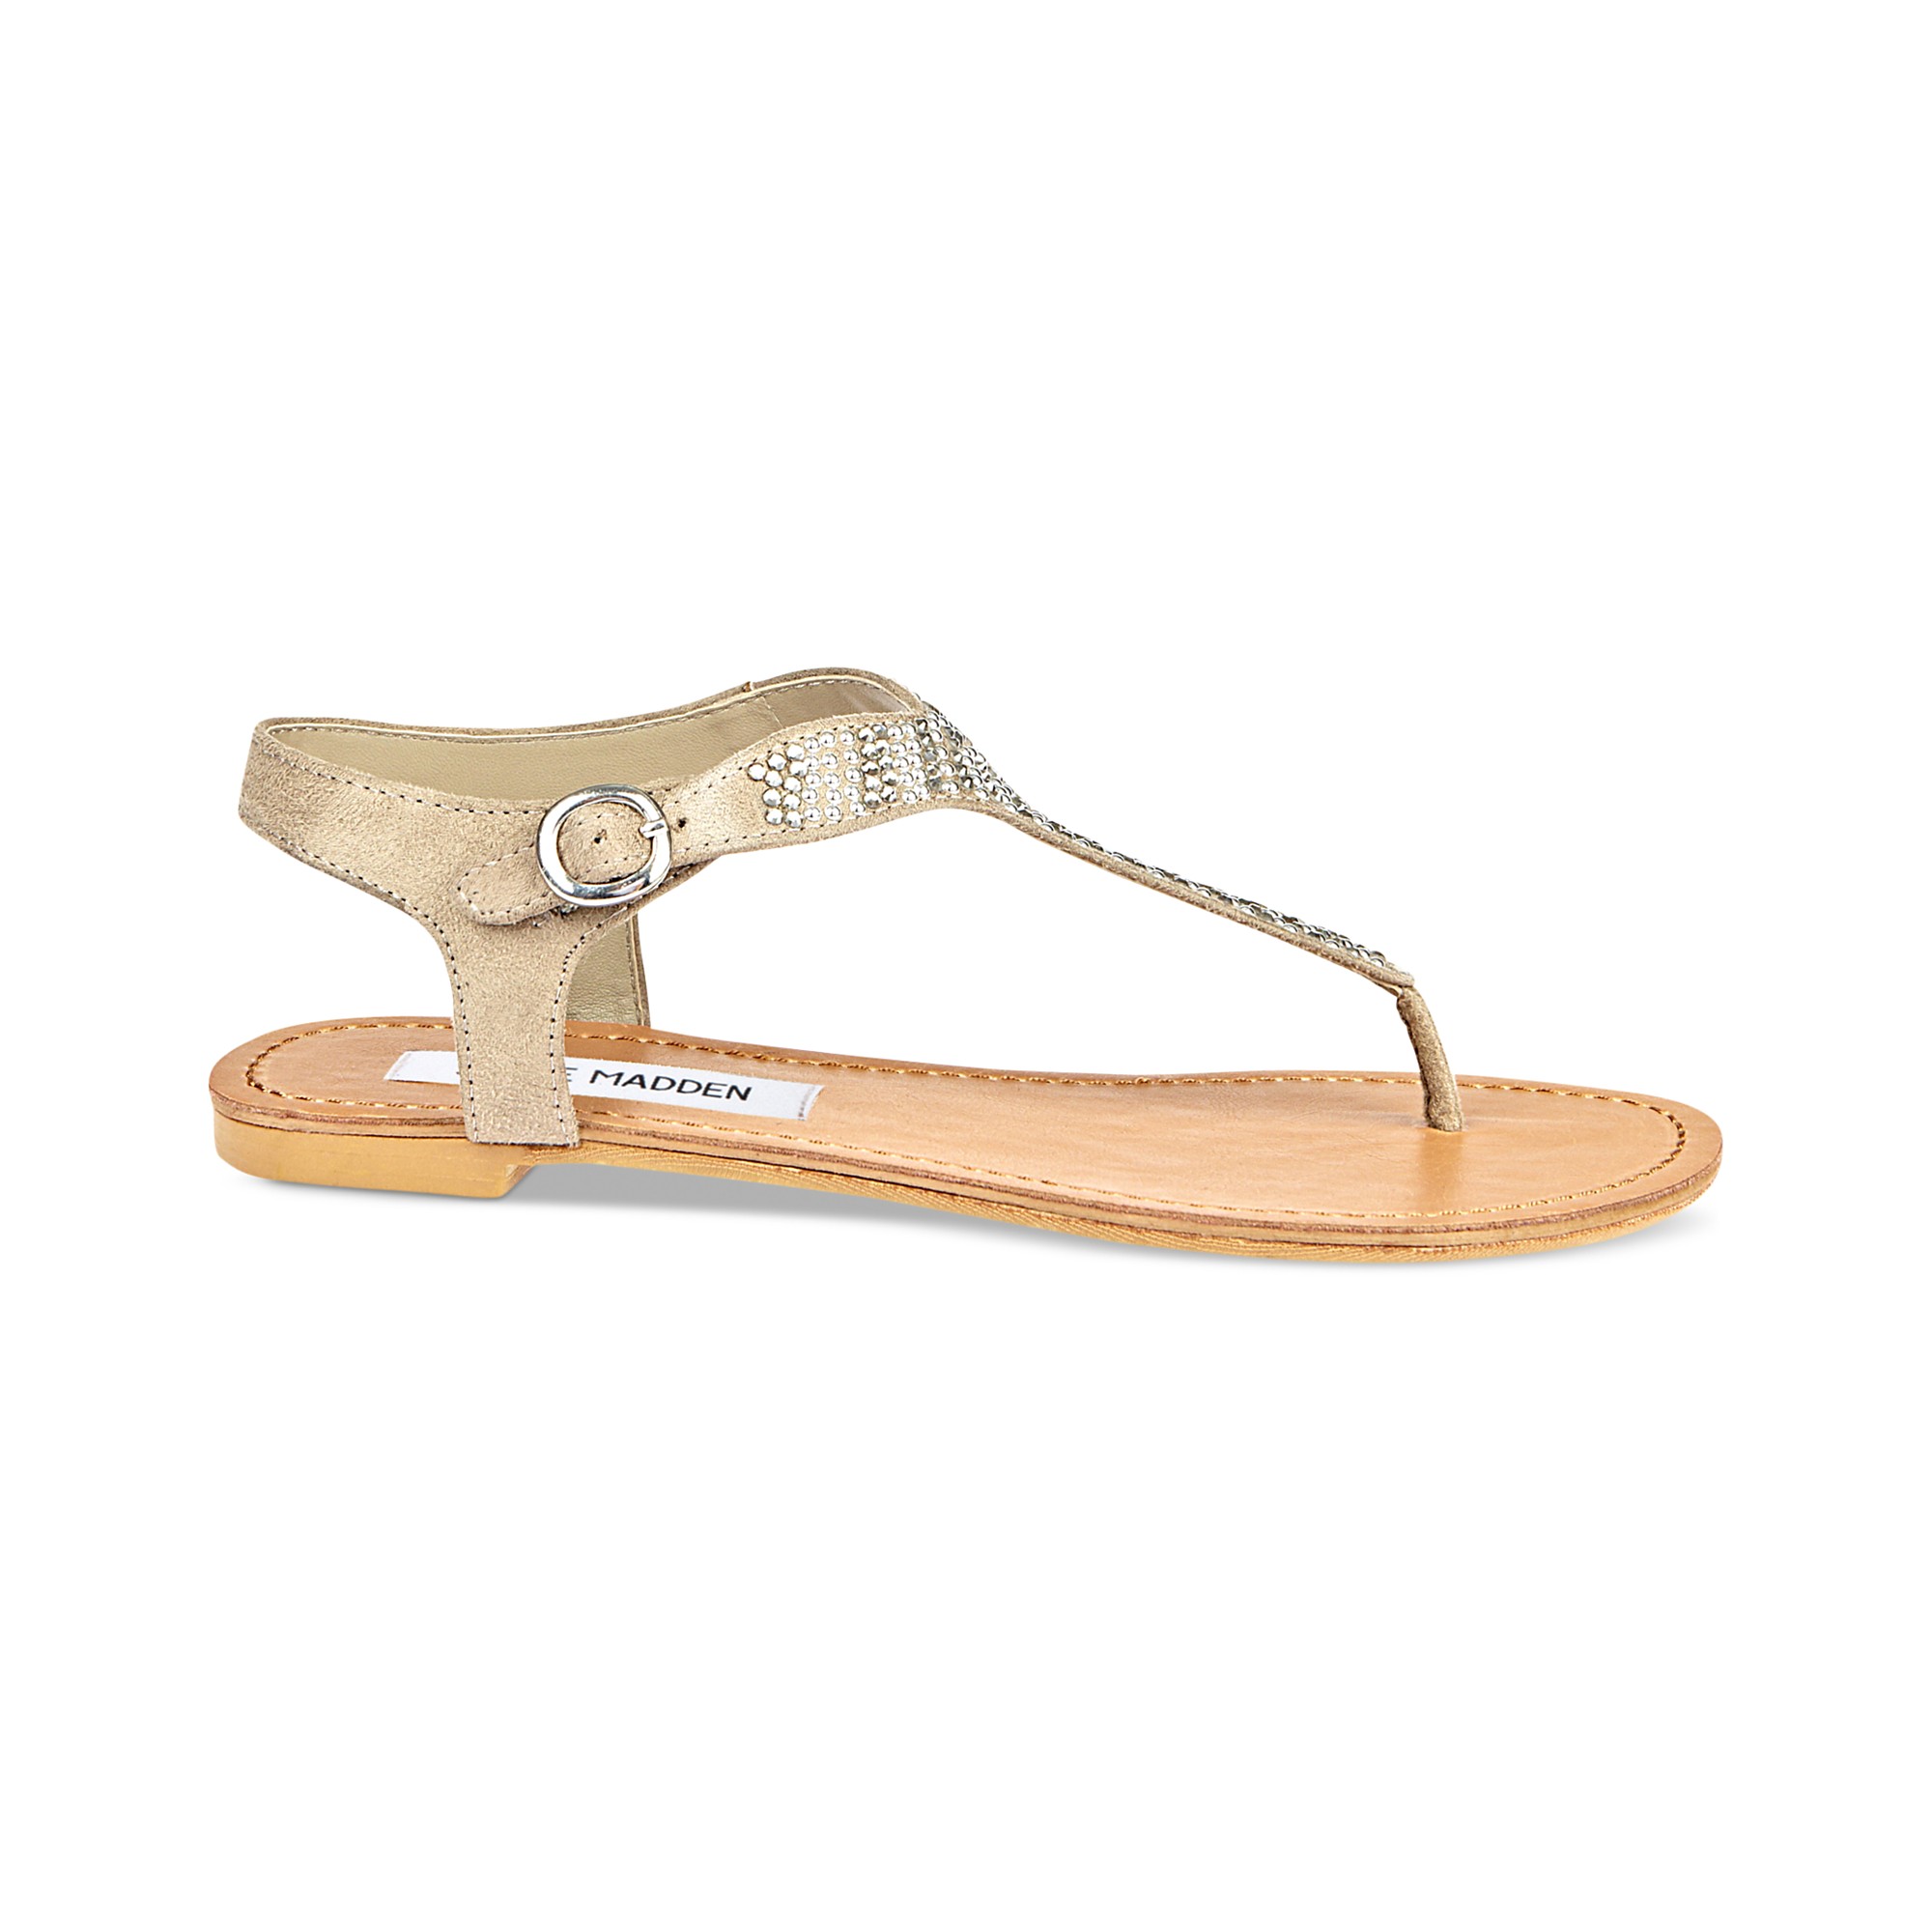 Lyst - Steve Madden Bonkerz Flat Sandals in Natural